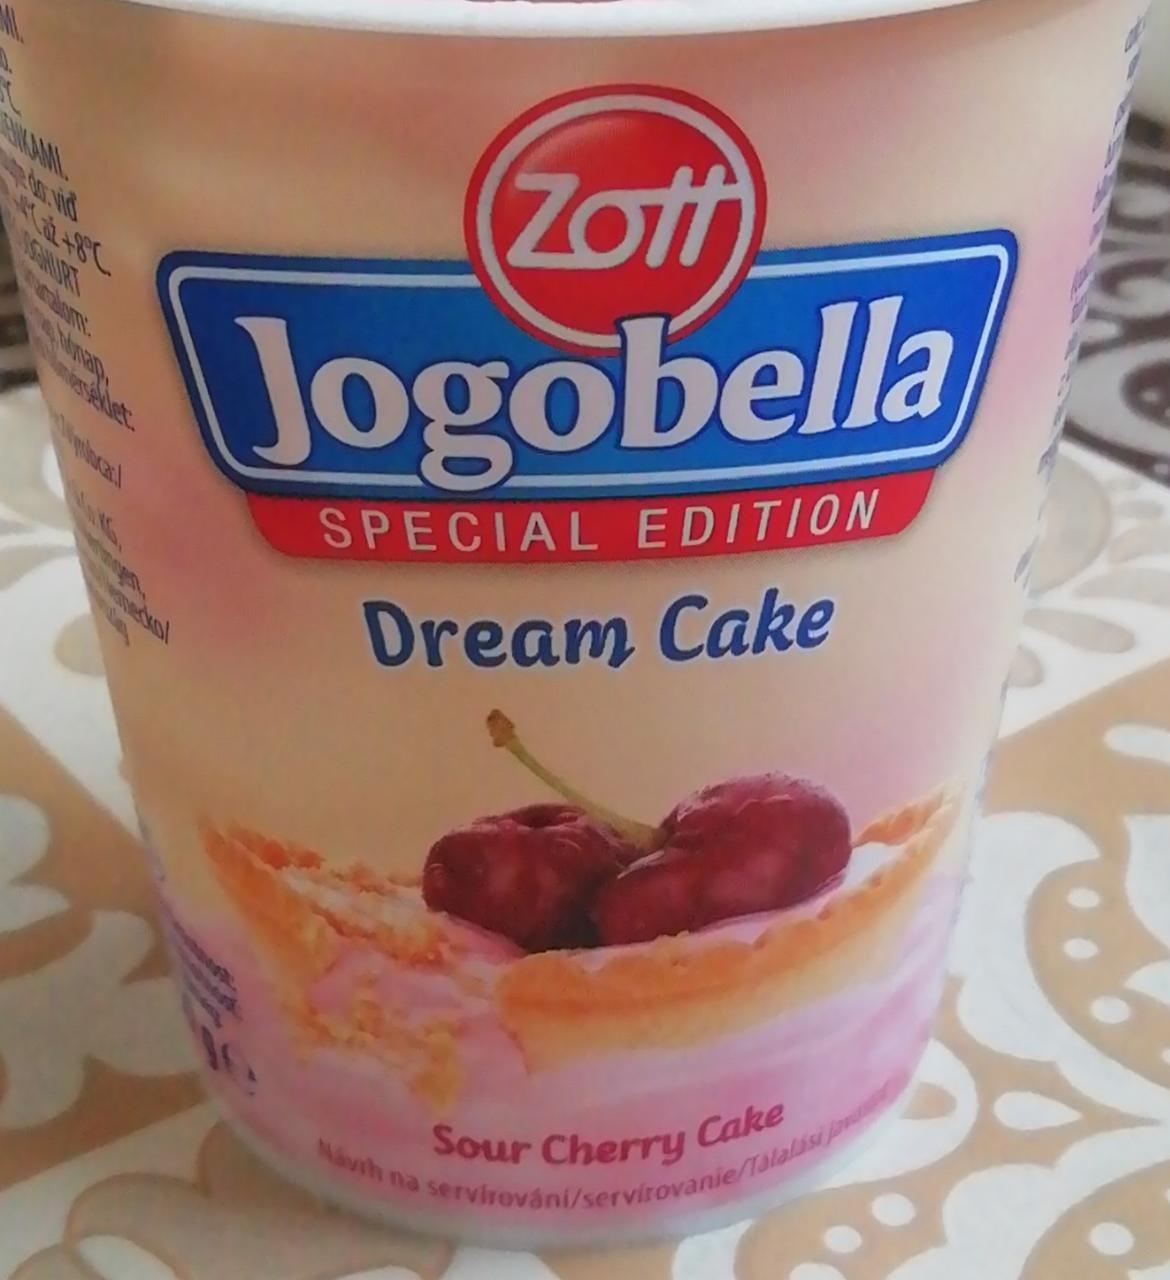 Képek - Zott Jogobella Dream Cake élőflórás joghurt piskótadarabokkal 150 g